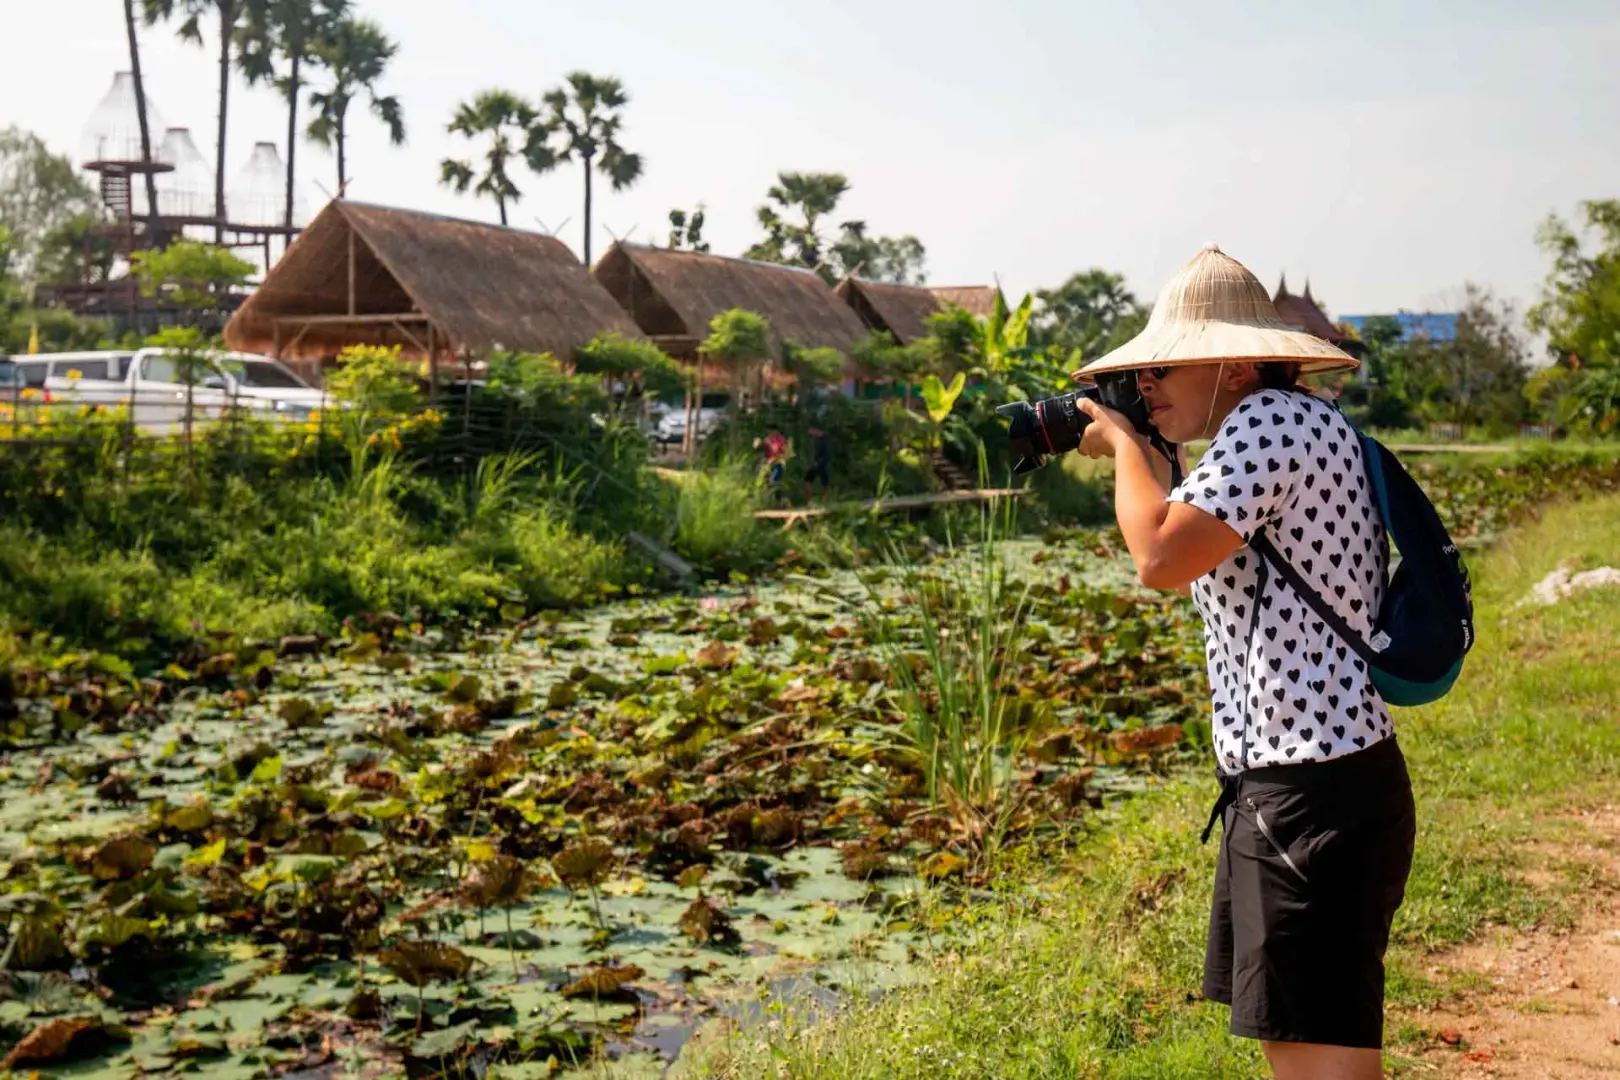 Sal a la aventura en este viaje organizado a Tailandia en grupo conociendo su capital, Bangkok, así como sus sitios históricos como Ayutthaya y Chiang Mai.